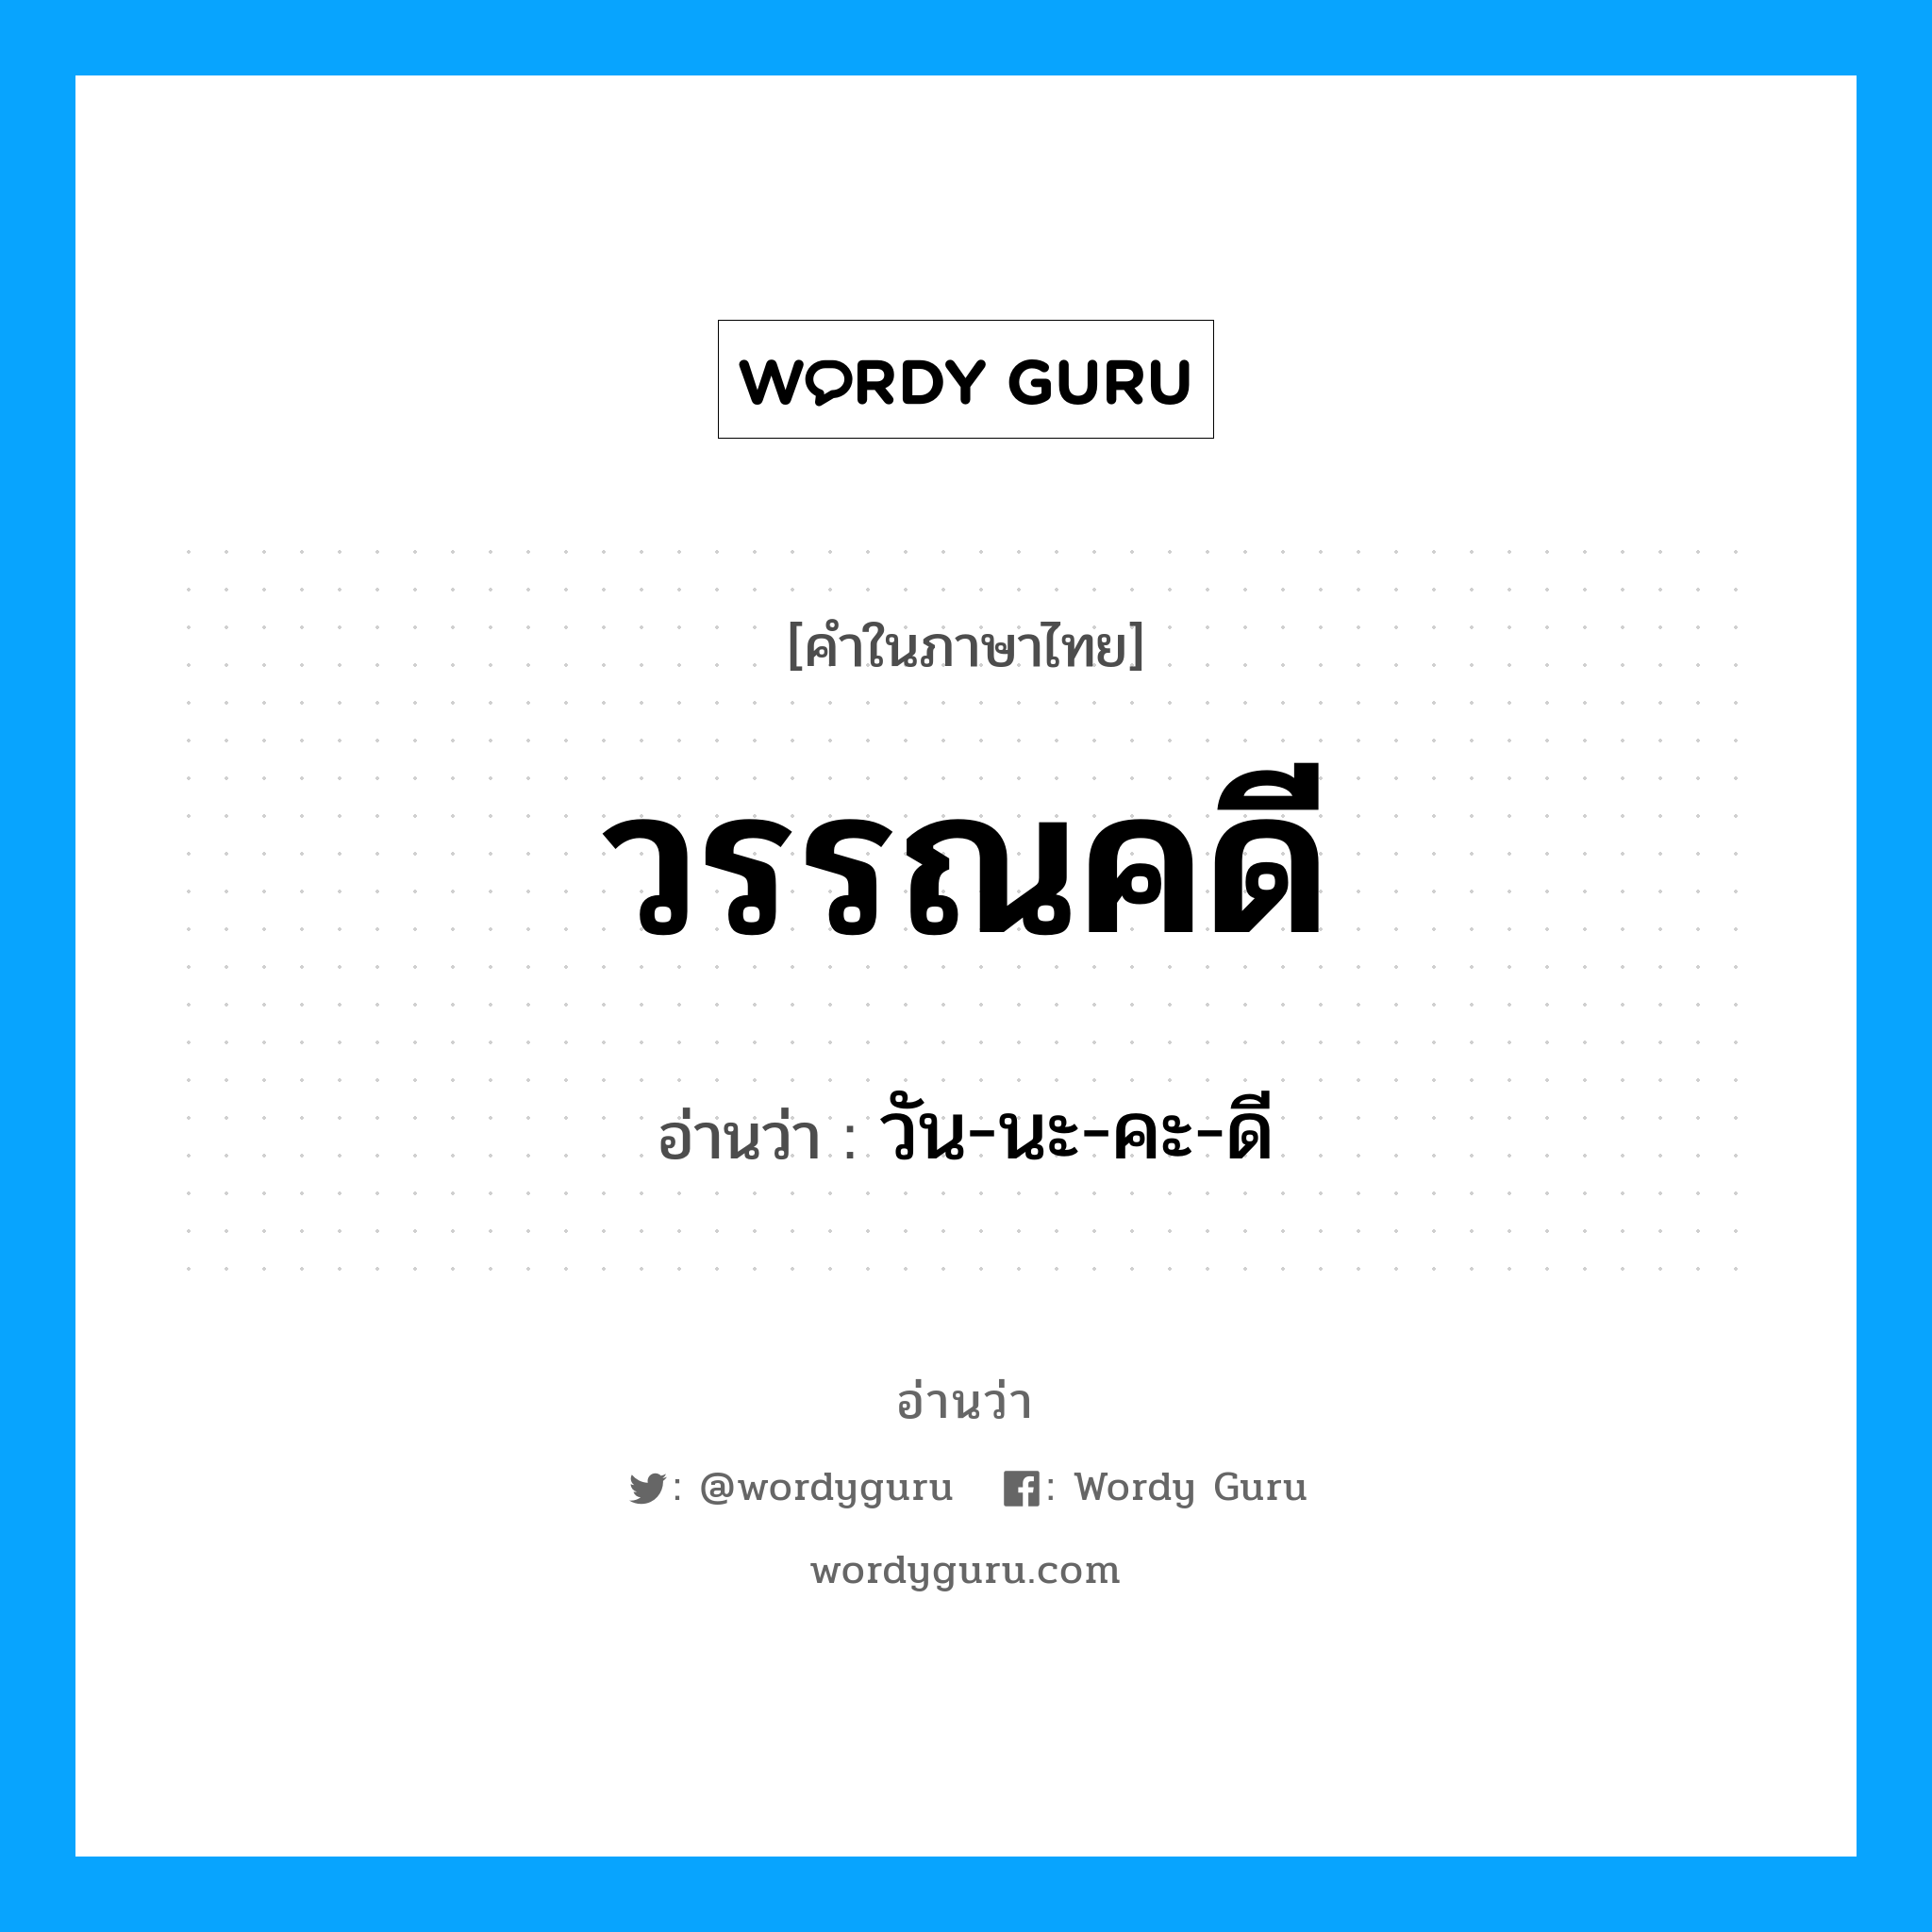 วัน-นะ-คะ-ดี เป็นคำอ่านของคำไหน?, คำในภาษาไทย วัน-นะ-คะ-ดี อ่านว่า วรรณคดี